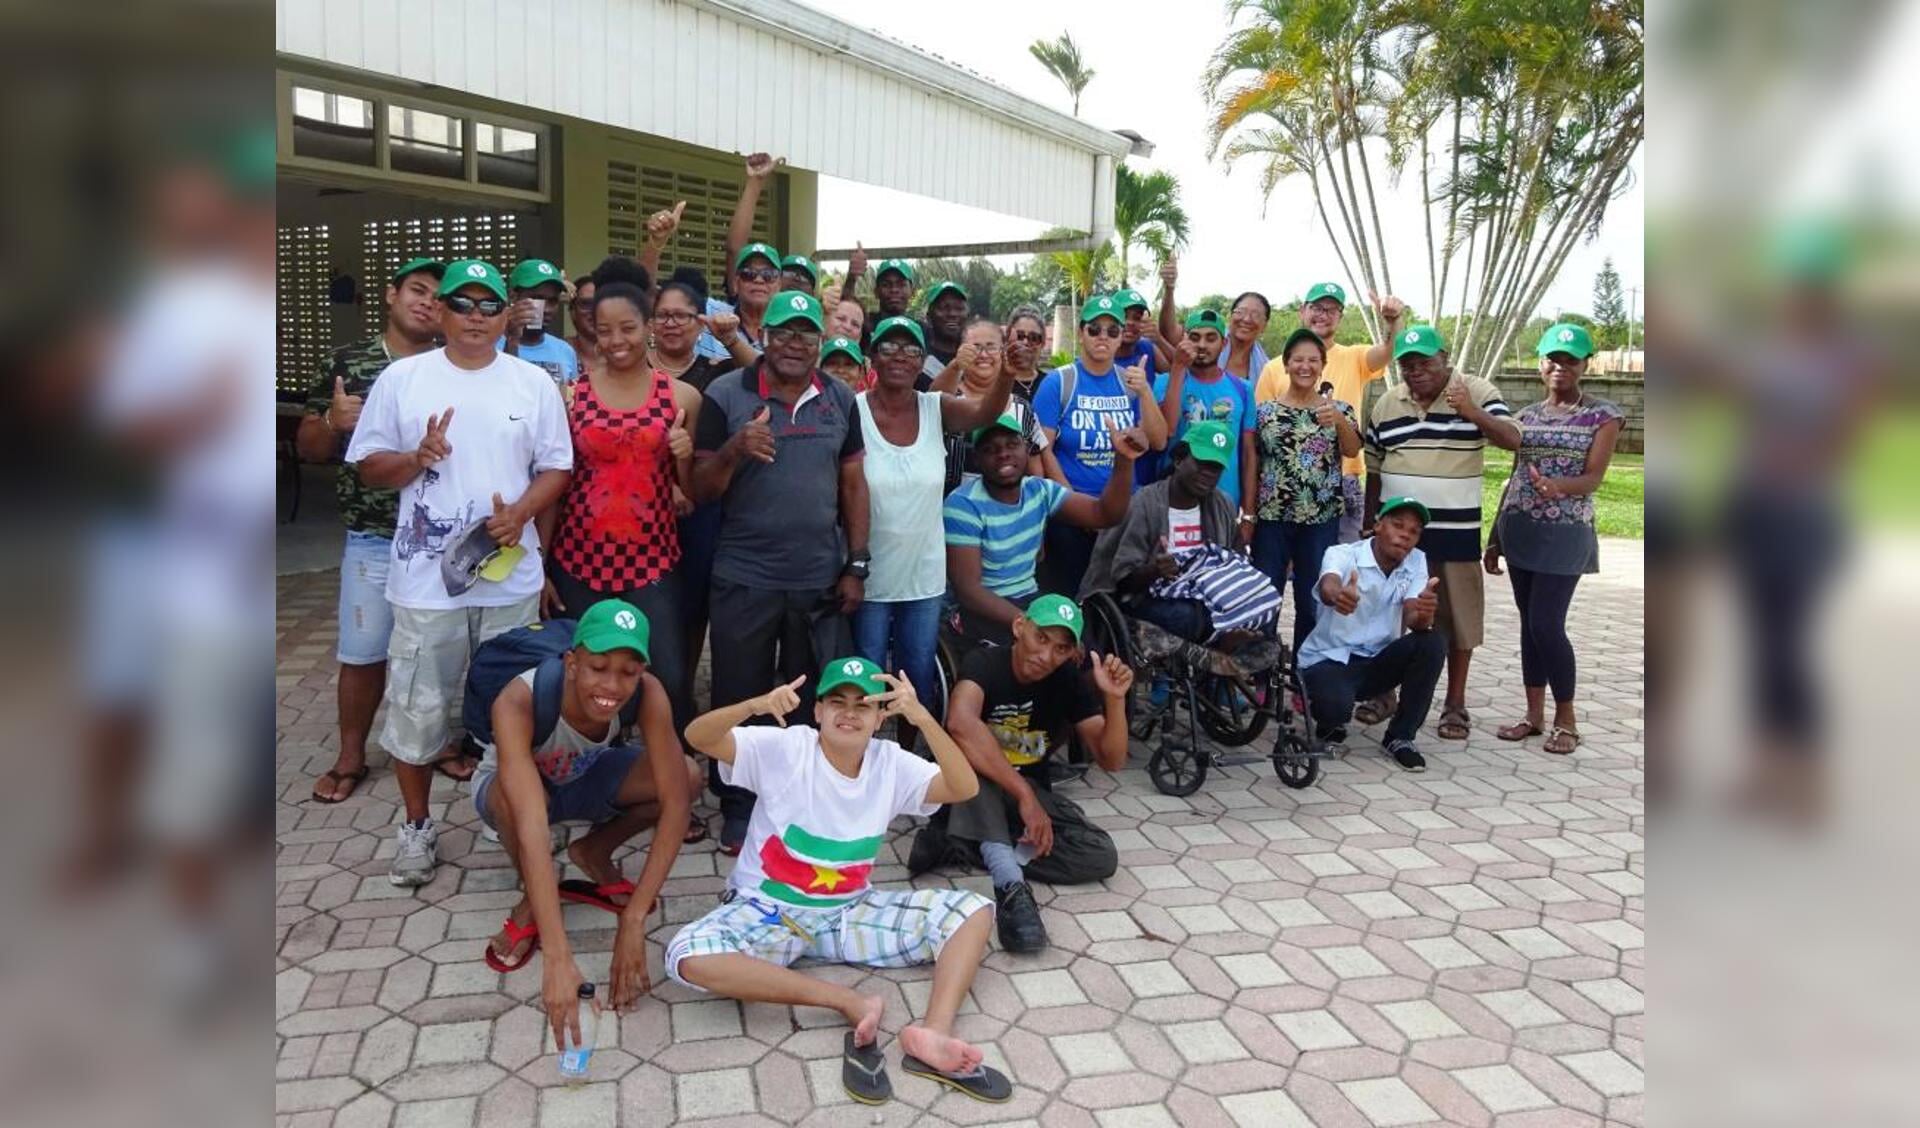 De sociale werkplaats in Paramaribo vierde deze maand een feestje vanwege het vijftienjarig bestaan van Unu Pikin. (Foto: aangeleverd)